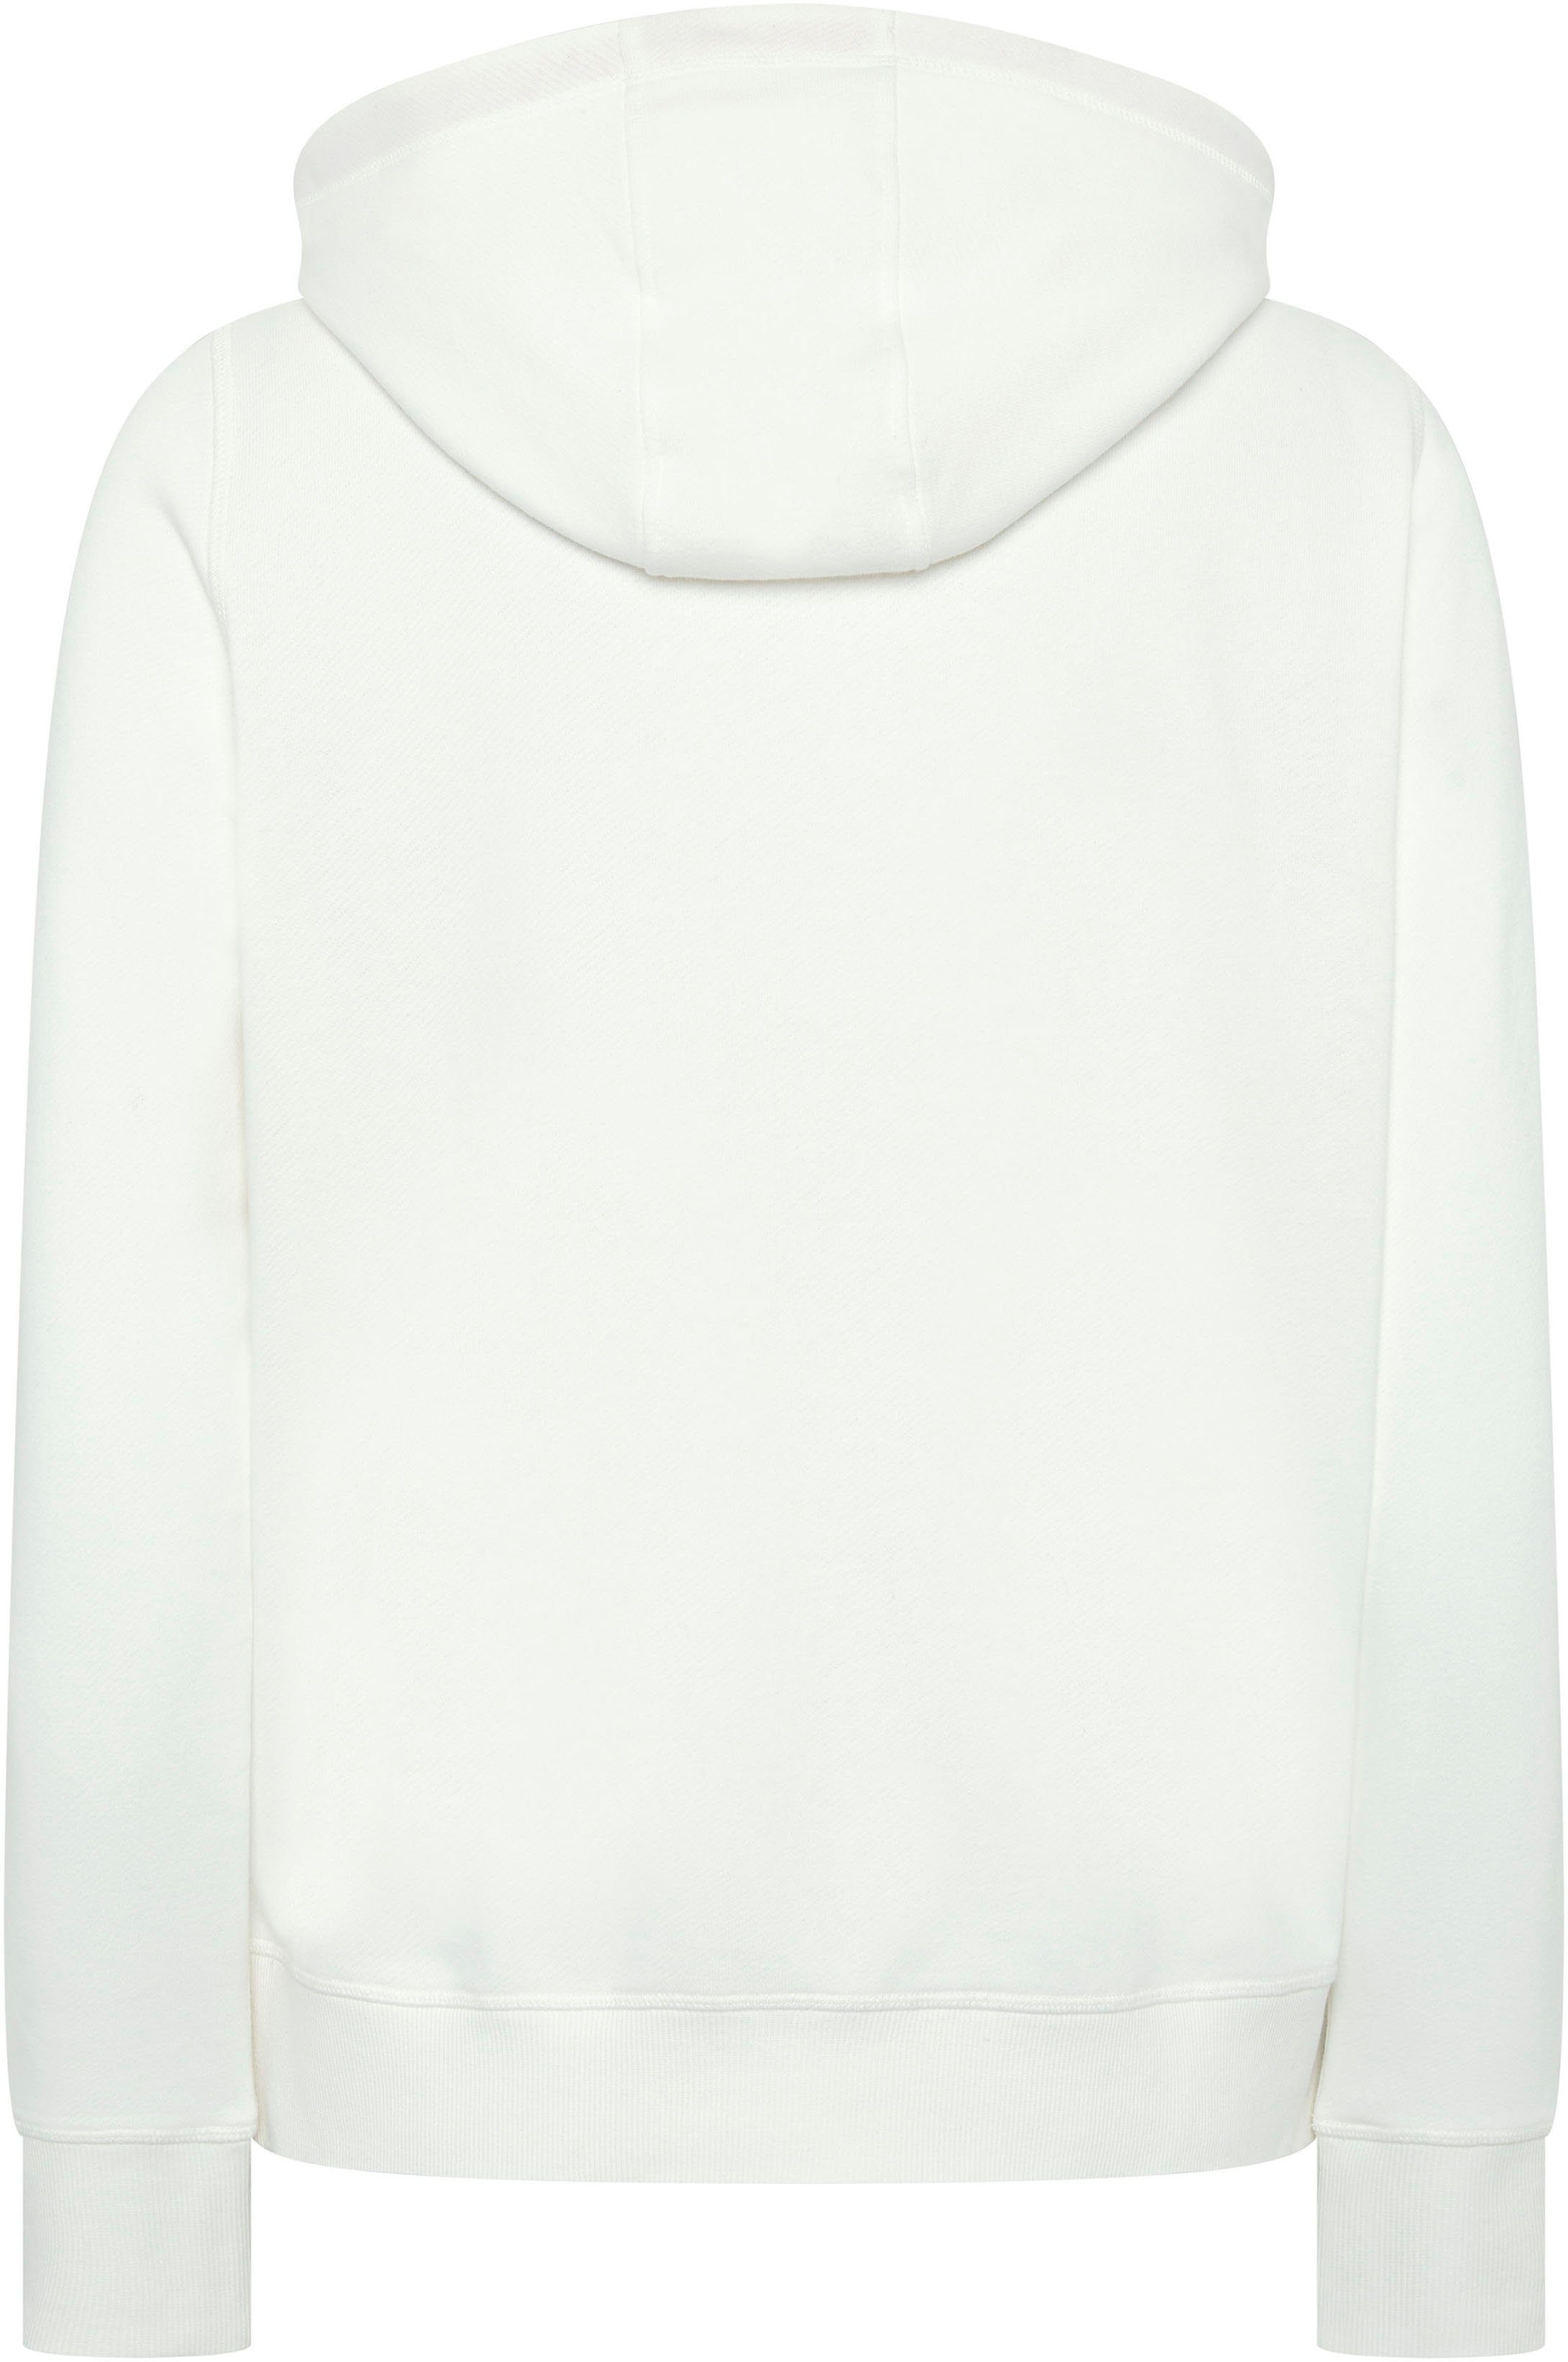 Chiemsee Sweatshirt Star White